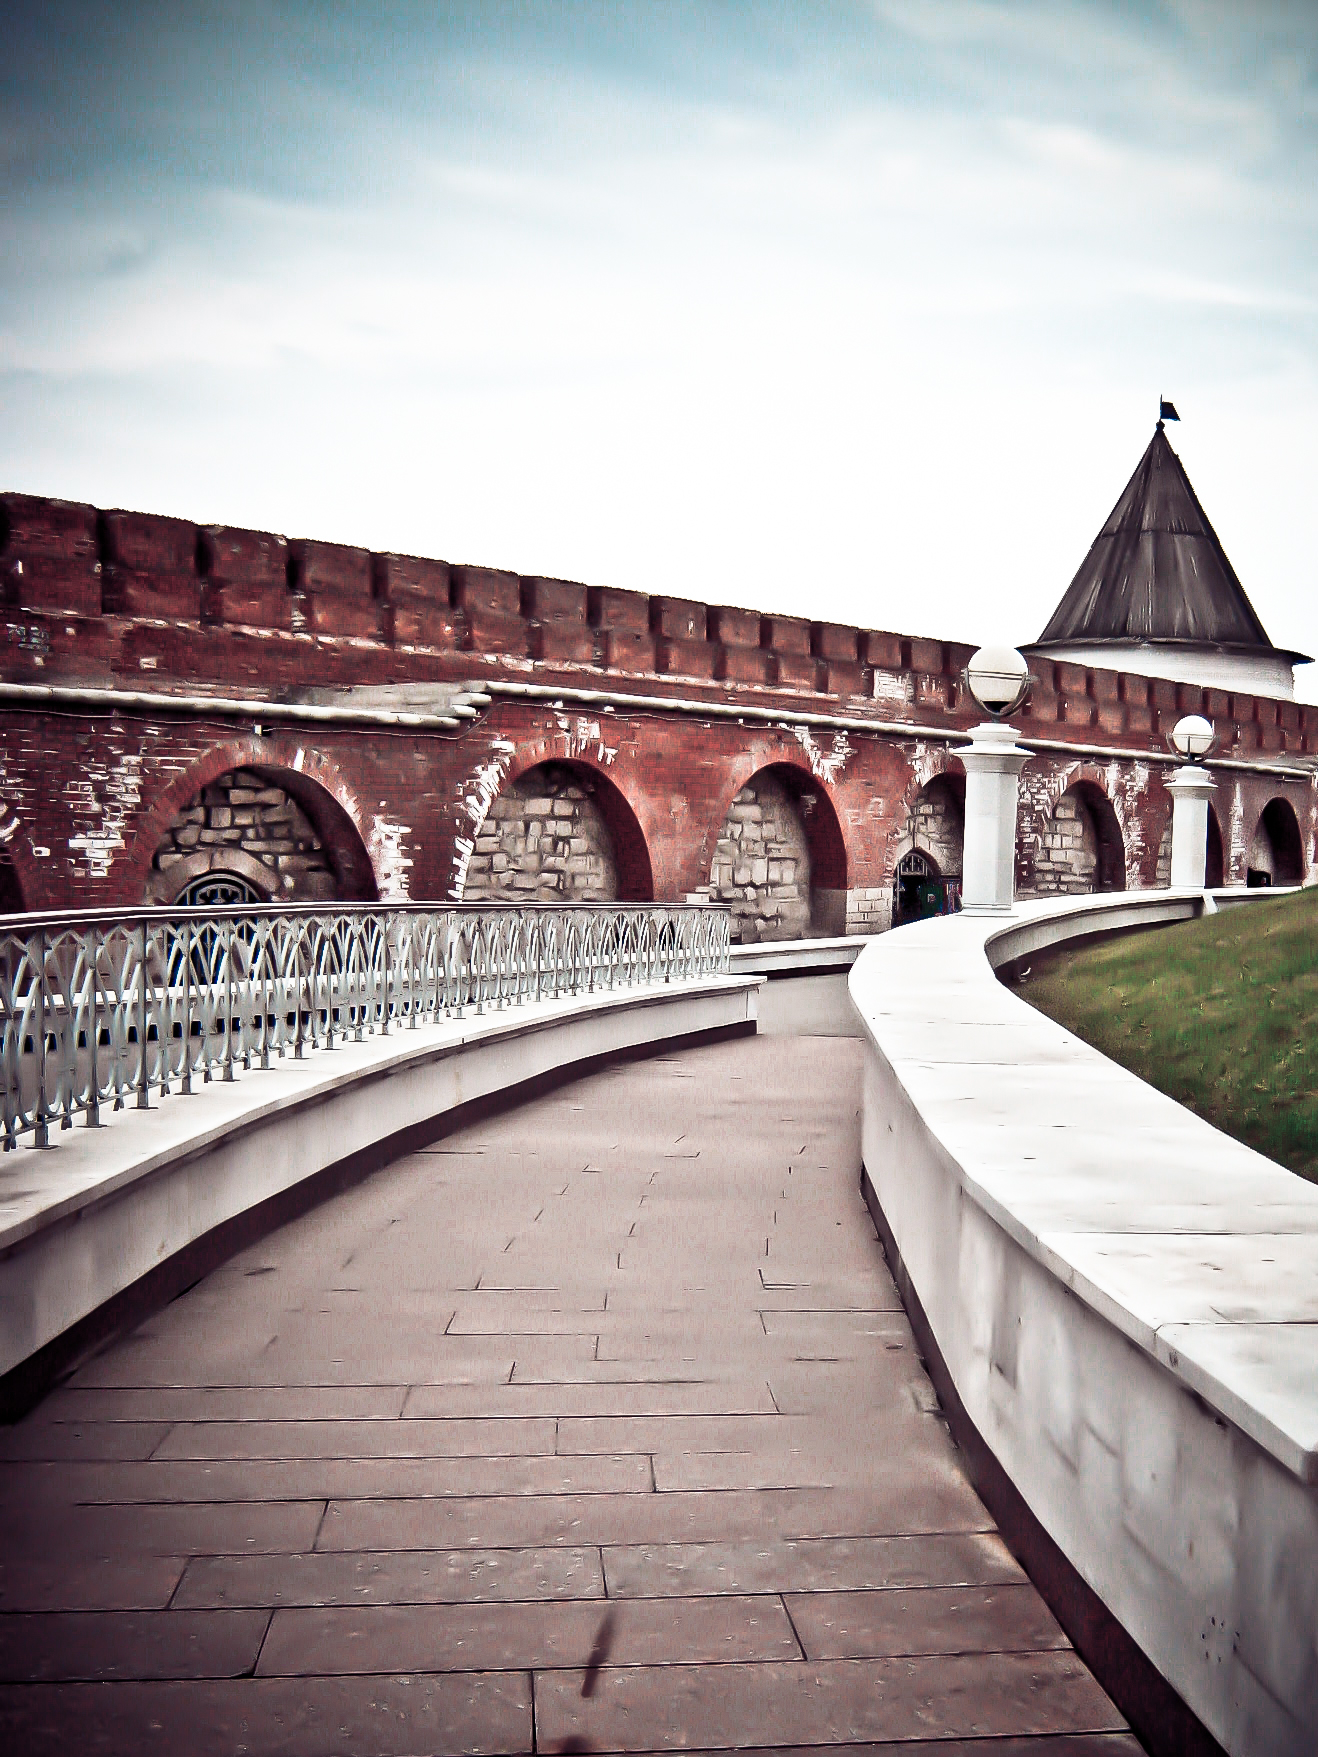 Казанская крепость